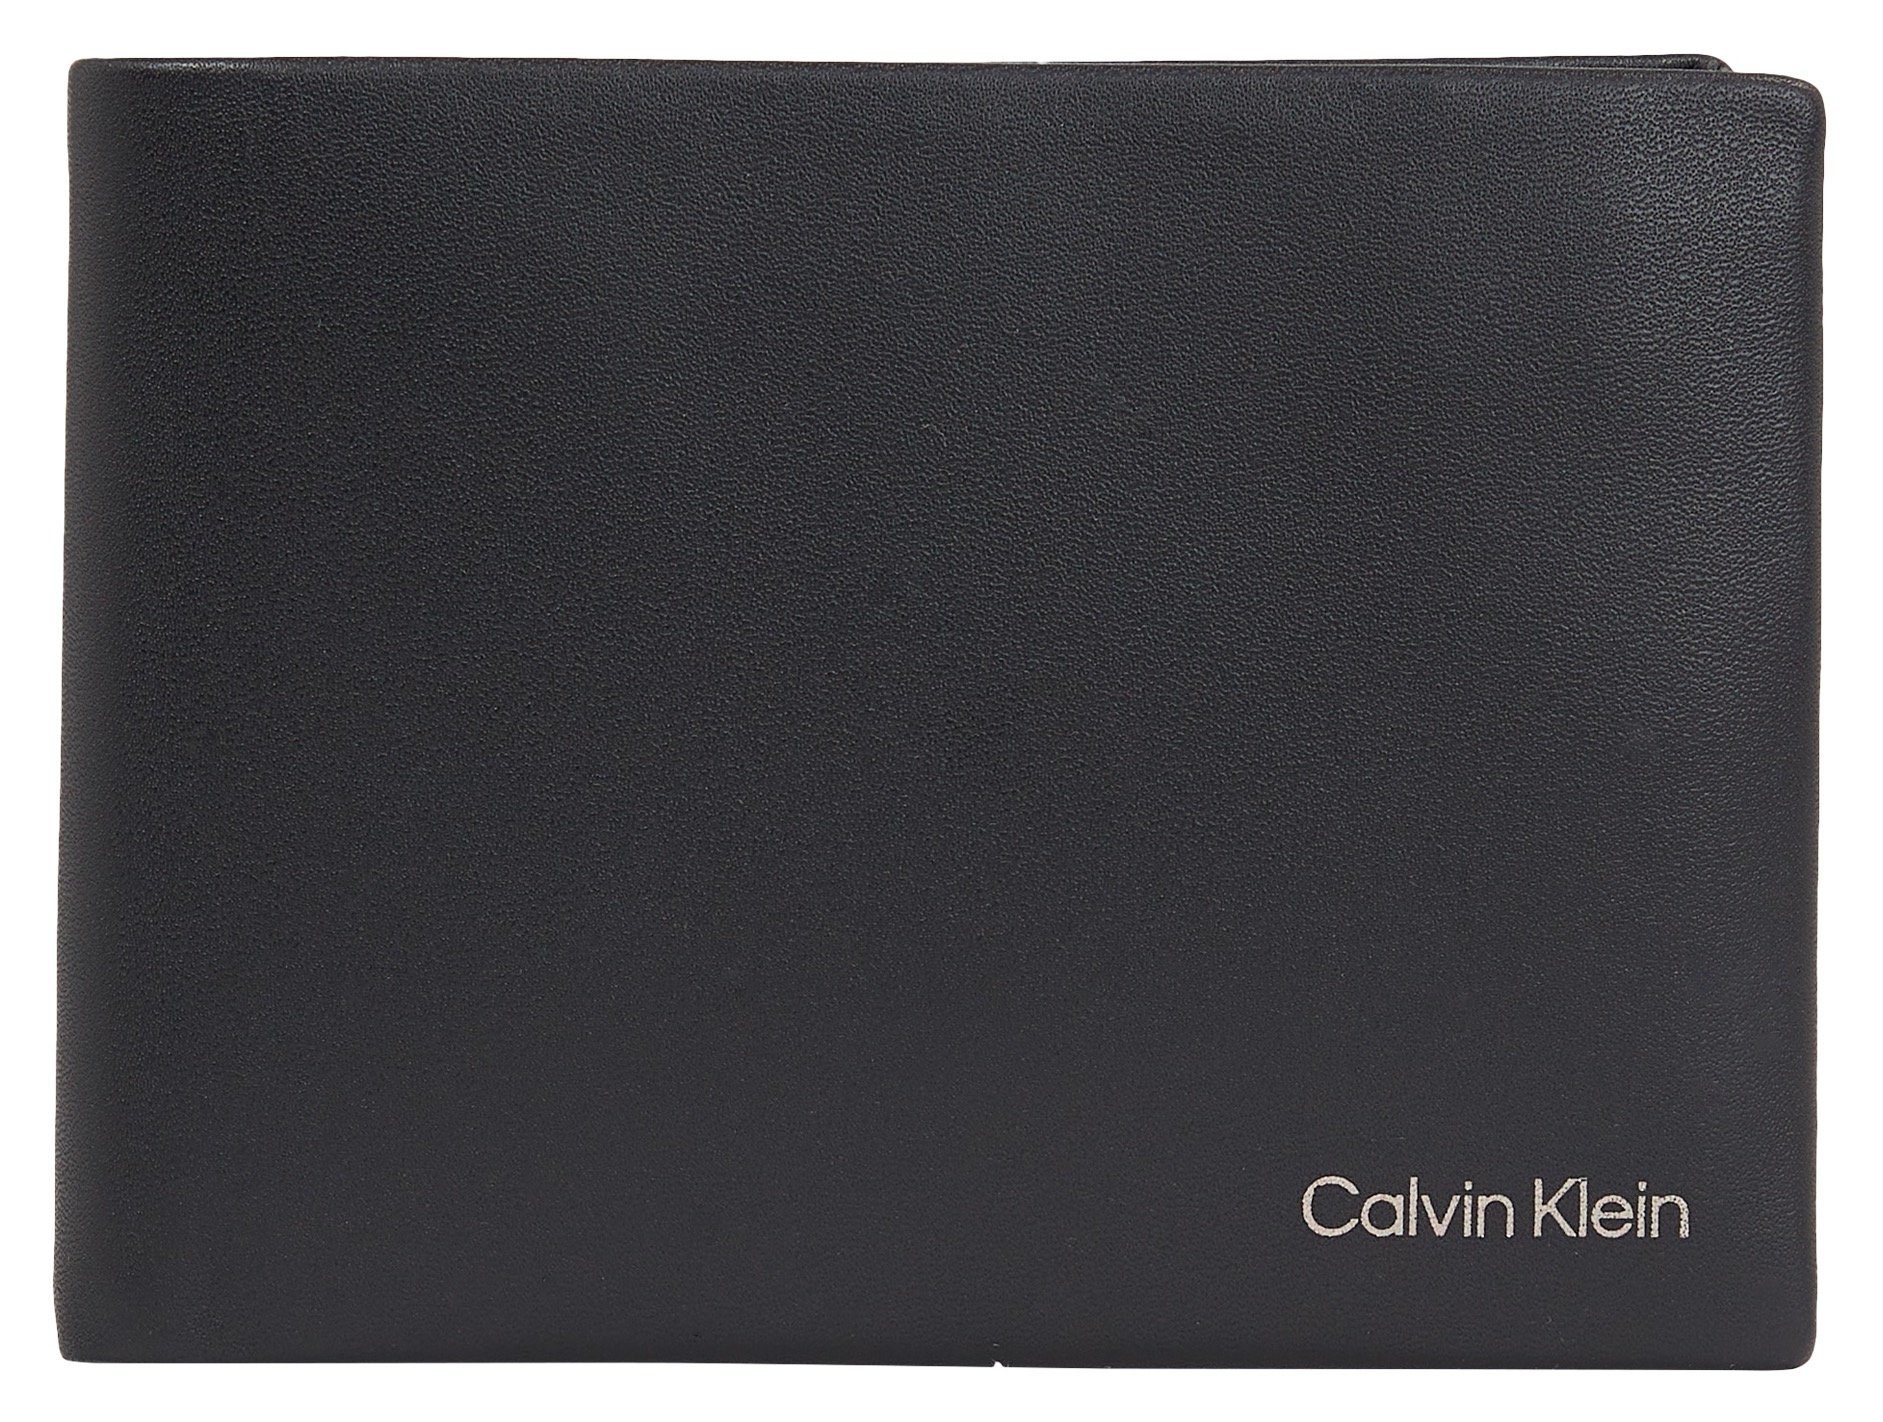 Angebotspreis Calvin Klein CONCISE CK W/COIN 5CC L, BIFOLD Geldbörse Stil in schlichtem